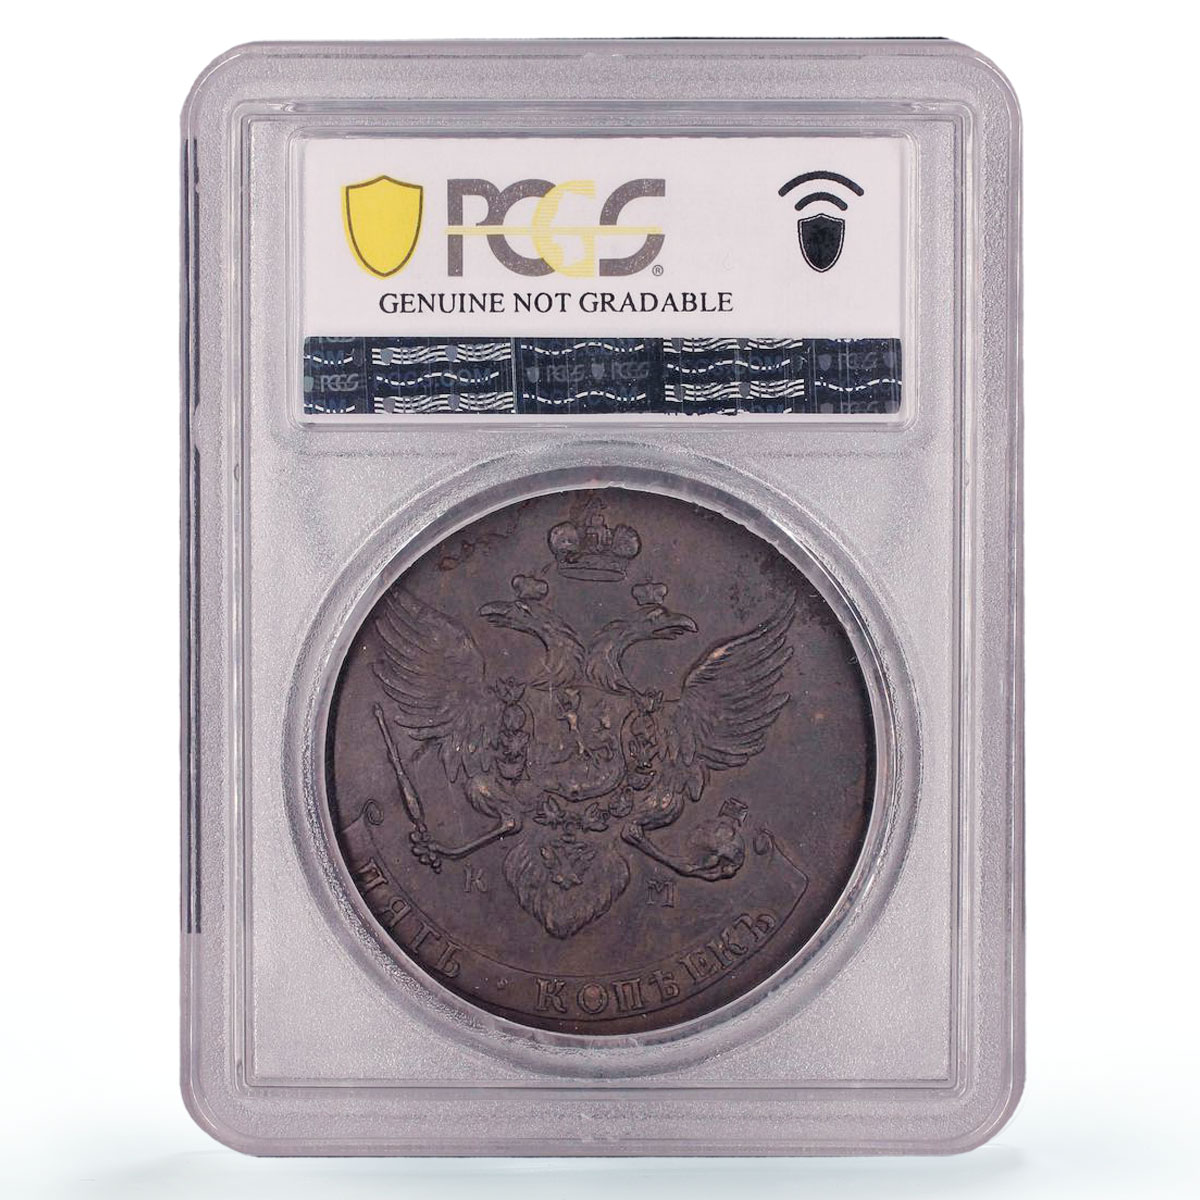 Russia Empire 5 kopecks Ekaterina II Small KM Bit-797 UNC PCGS copper coin 1788